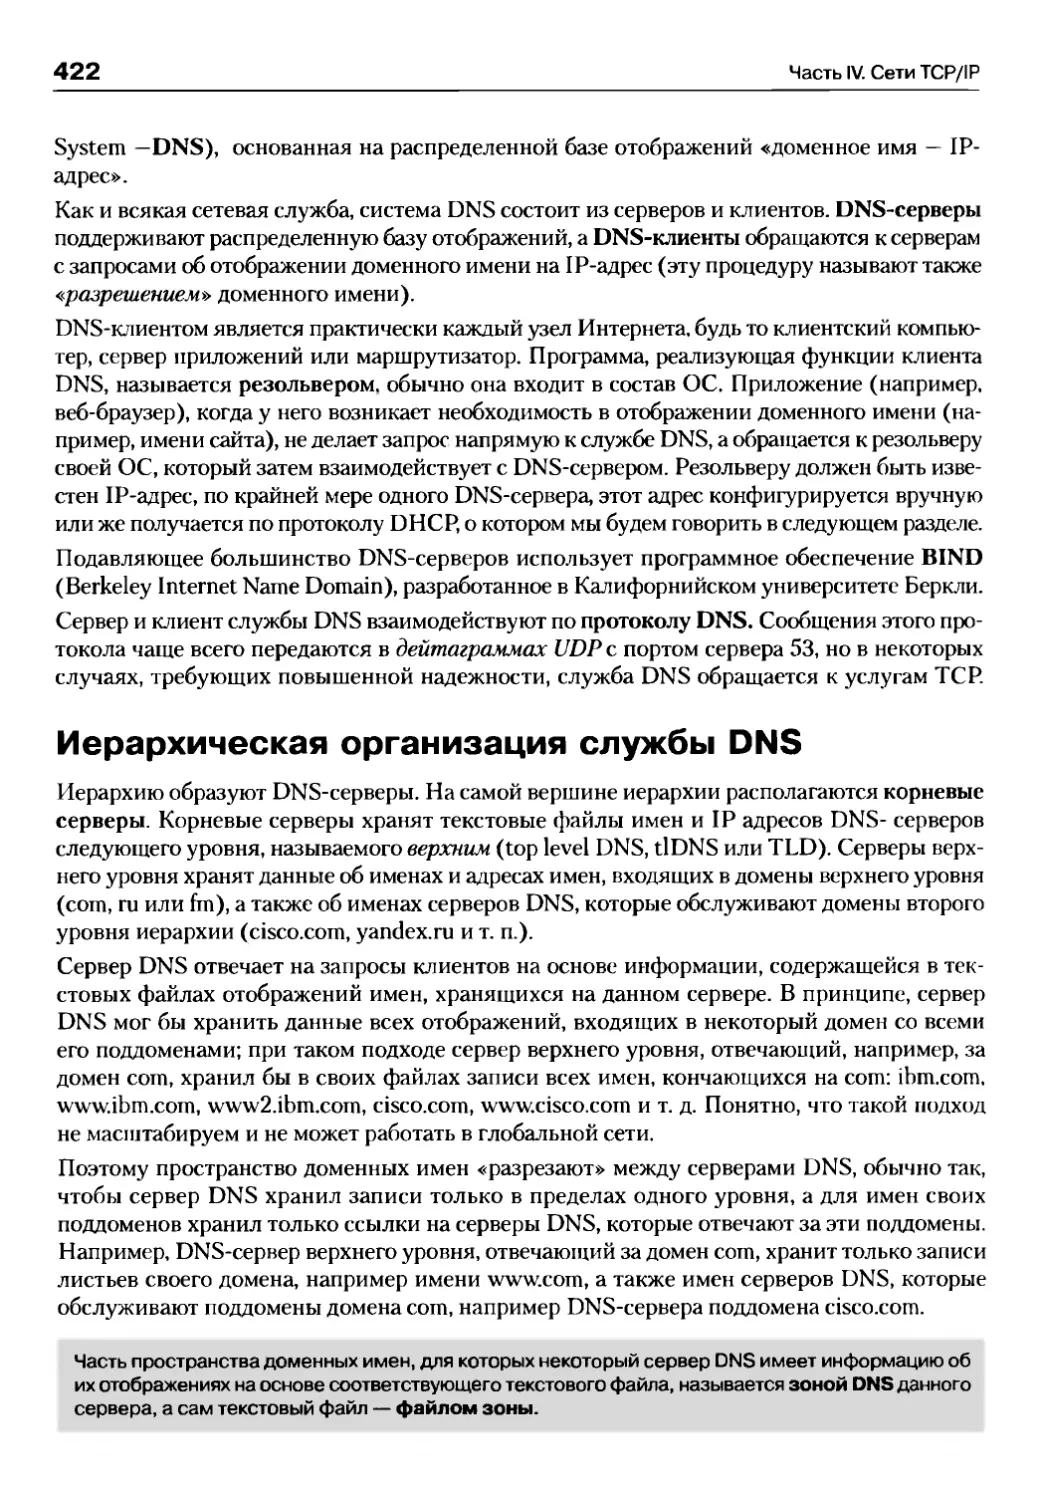 Иерархическая организация службы DNS